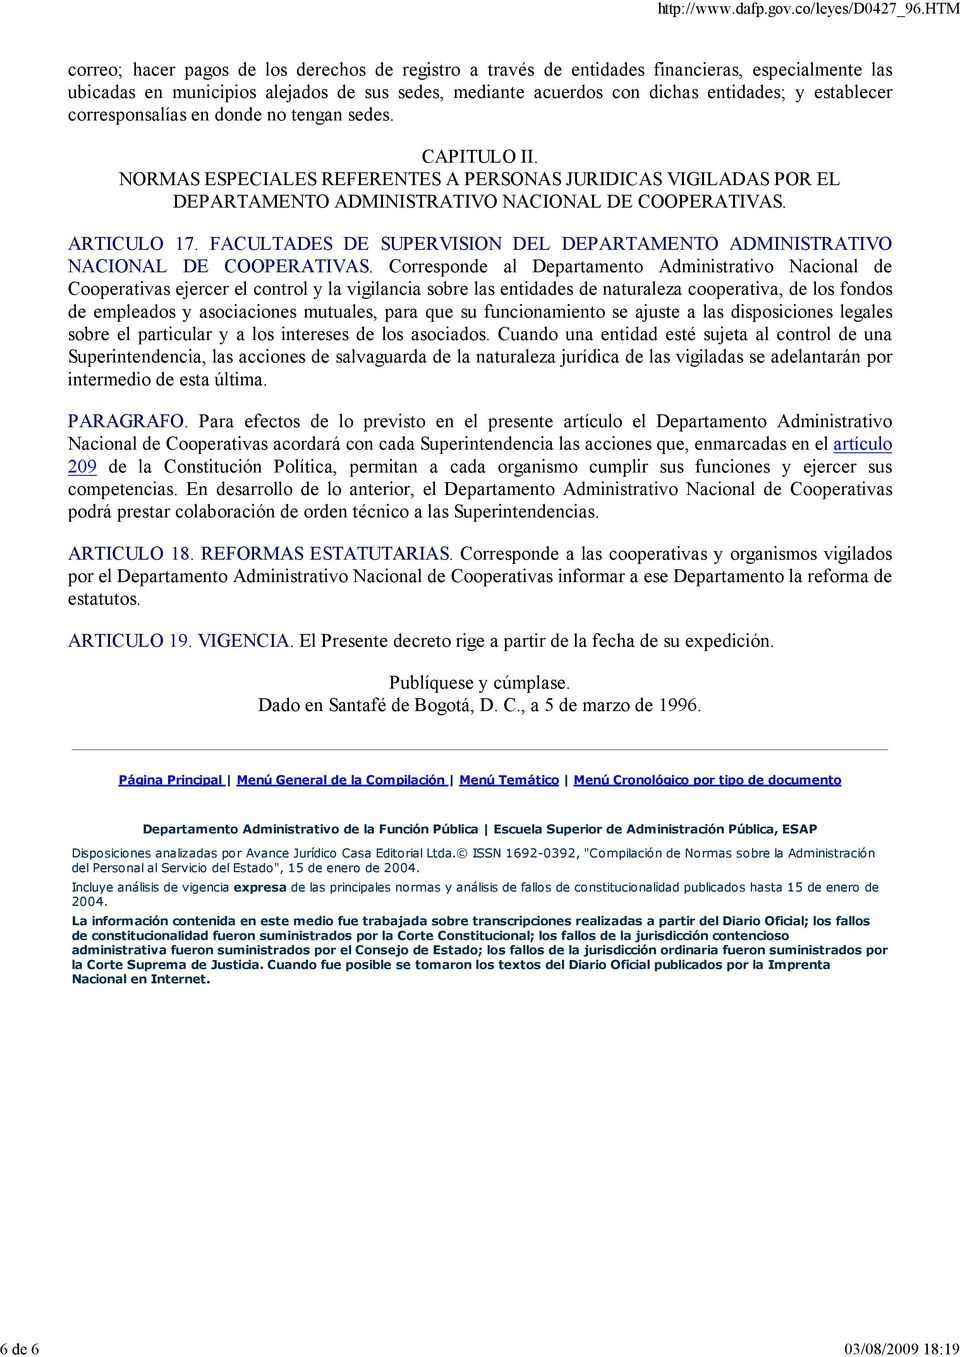 ARTICULO 17. FACULTADES DE SUPERVISION DEL DEPARTAMENTO ADMINISTRATIVO NACIONAL DE COOPERATIVAS.